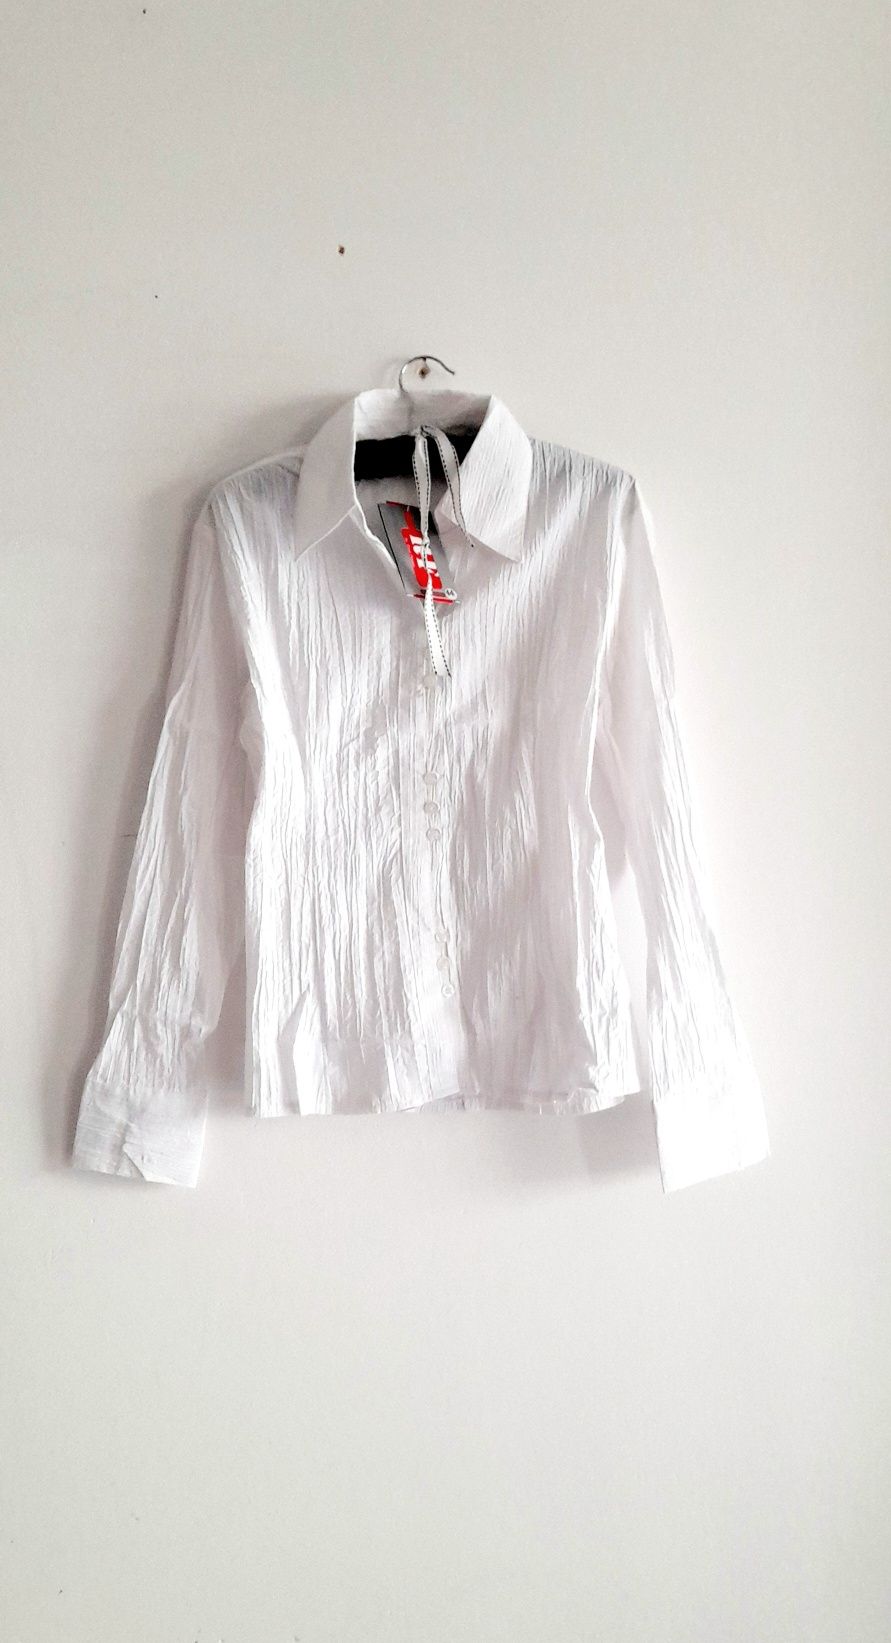 OKAZJA Nowa damska biała koszula bawełniana bawełna wiosna 44 xxl 42 x